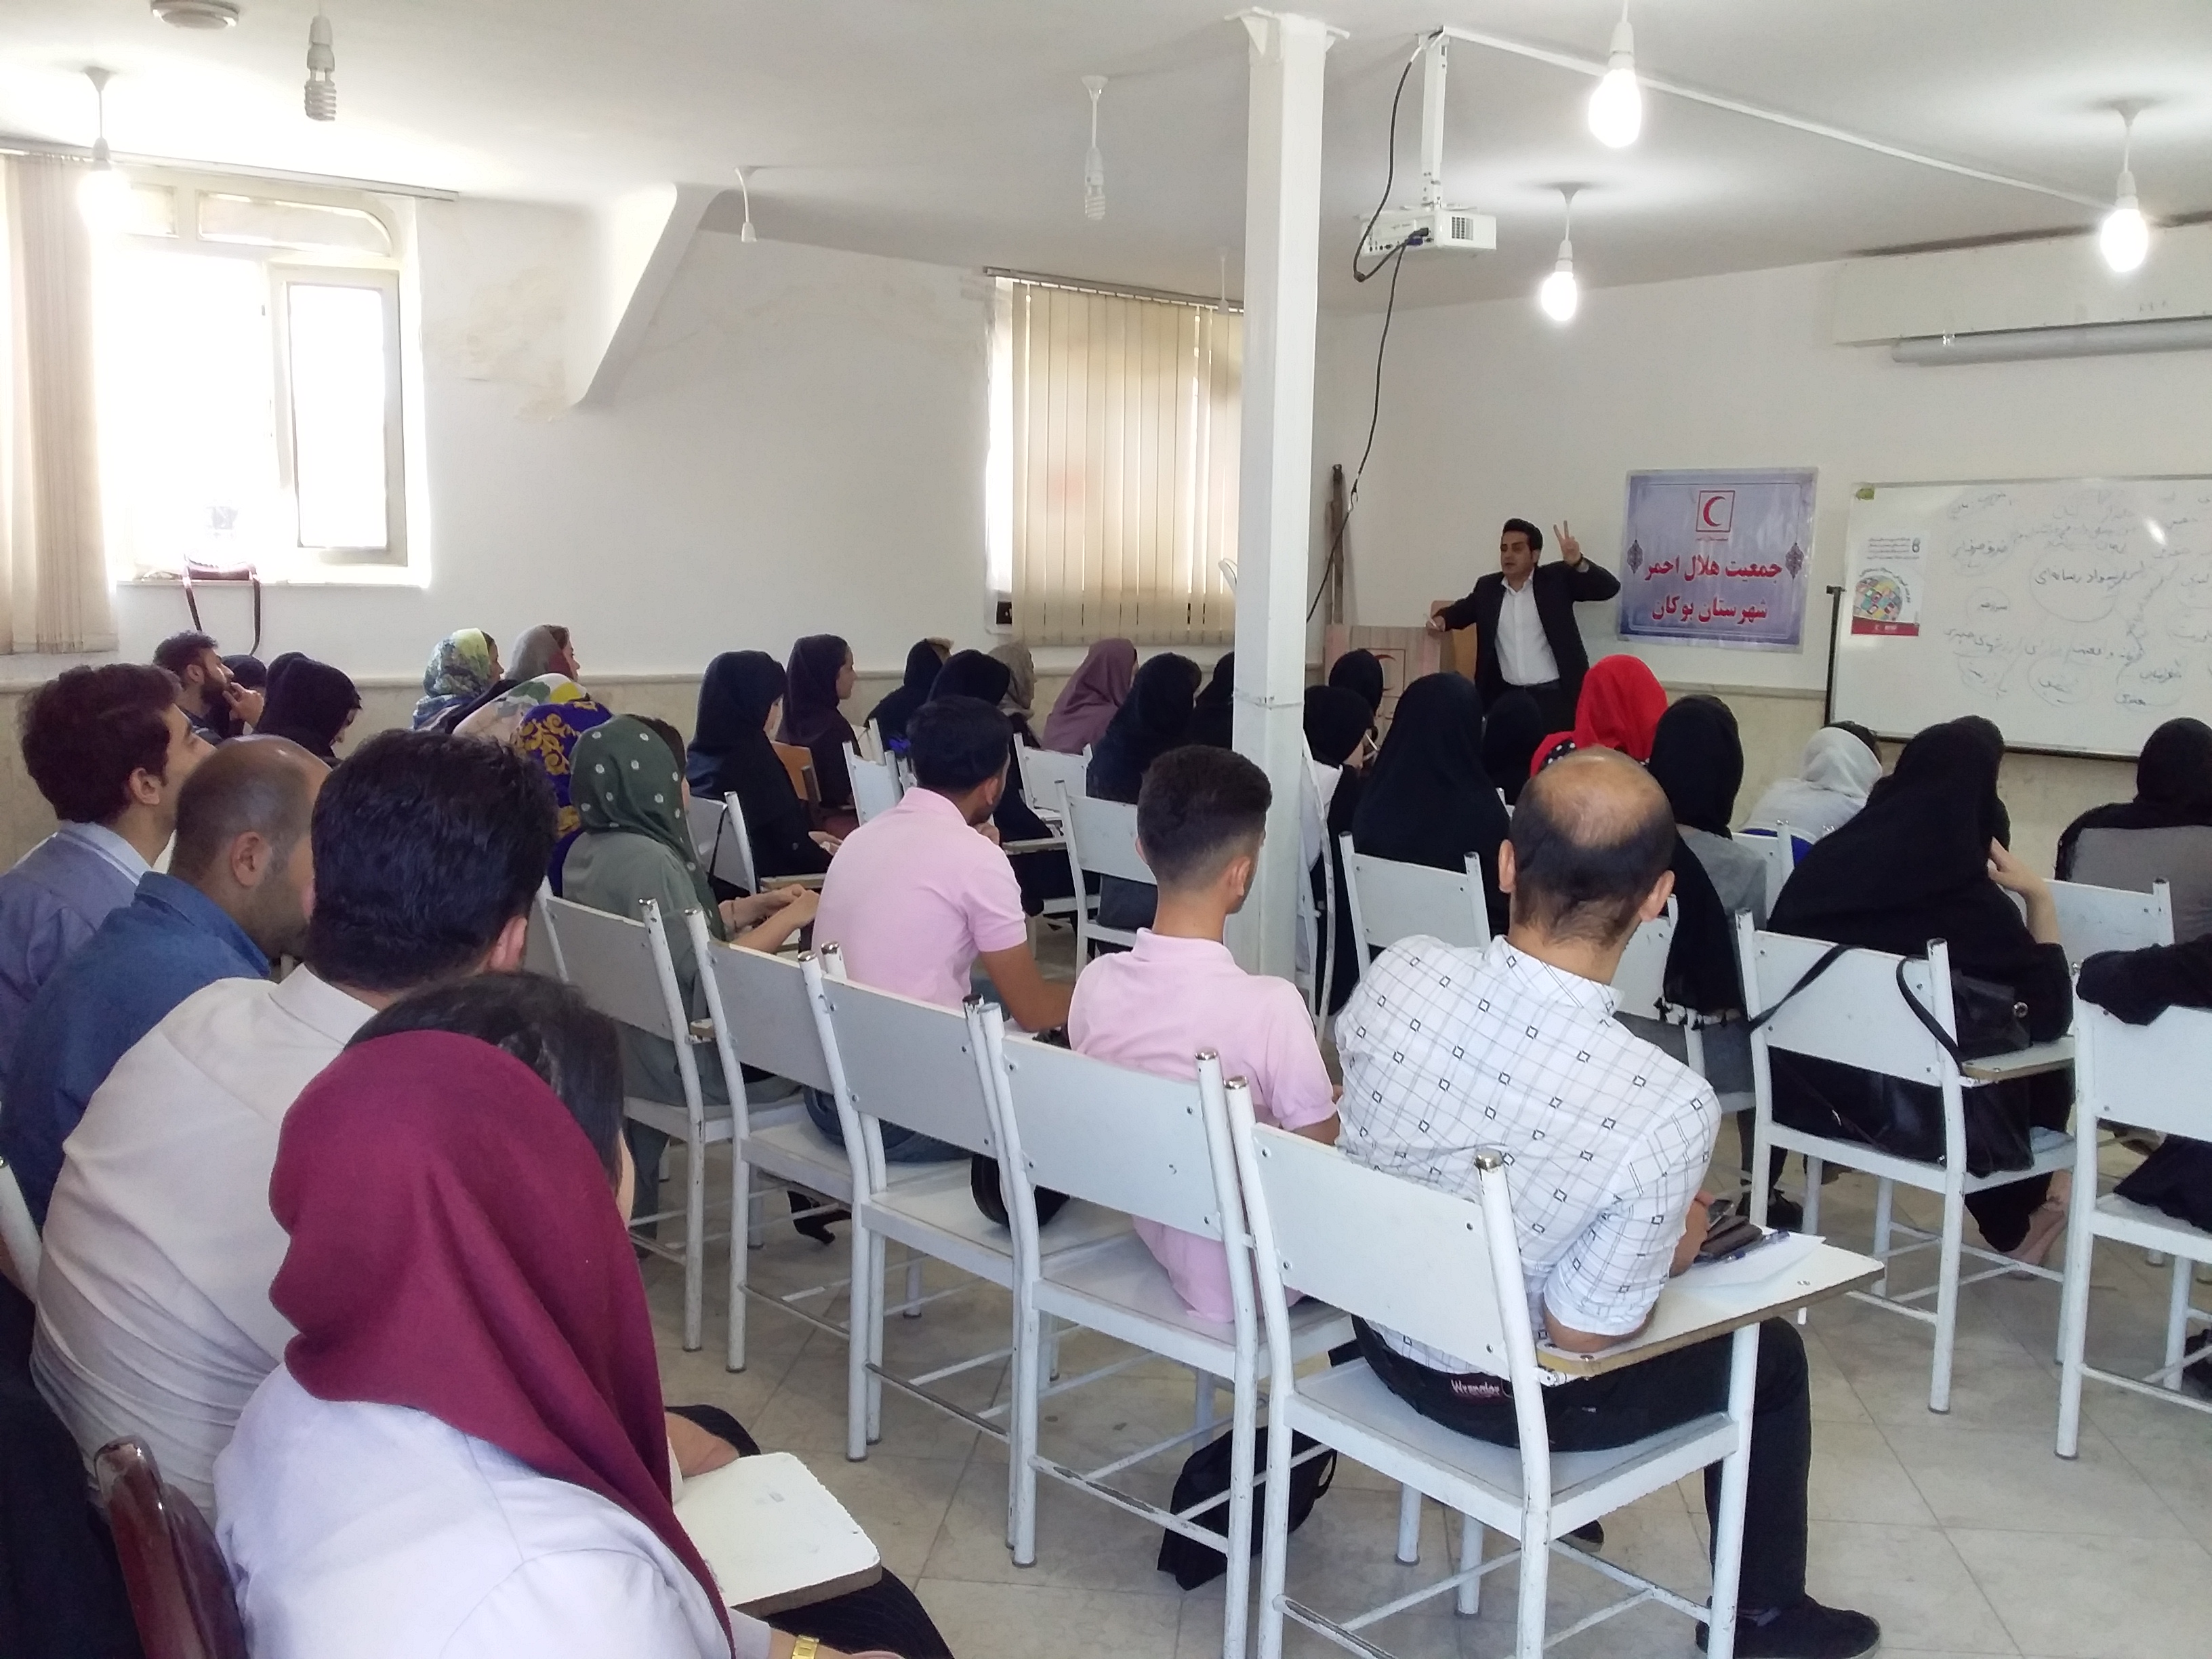 کارگاه آموزشی “سواد رسانه ای” در جمعیت هلال احمر بوکان برگزار شد